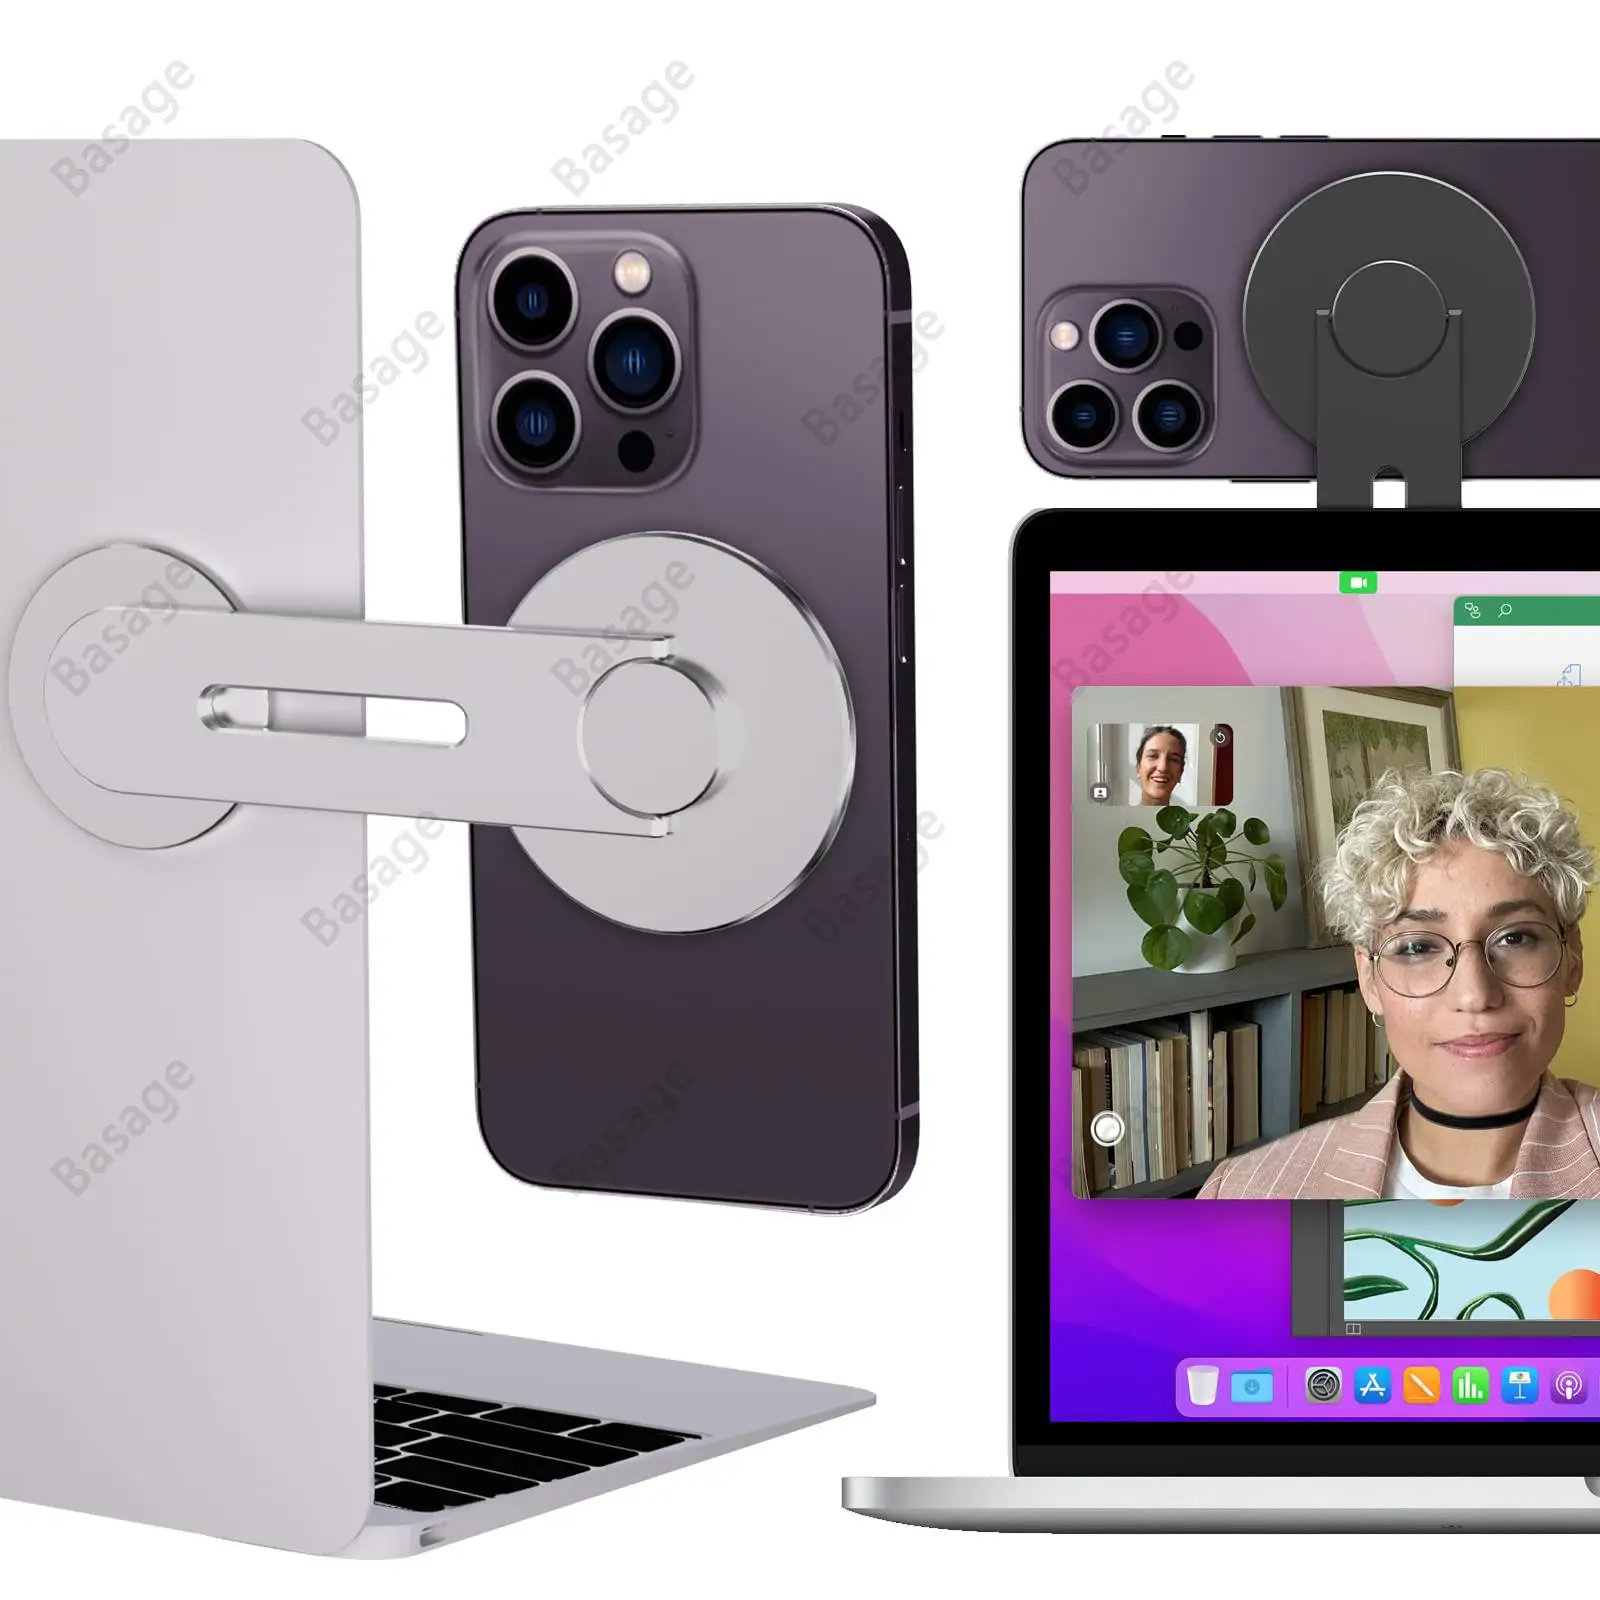 

Магнитный держатель для ноутбука и телефона, регулируемое крепление для камеры Magsafe iPhone, для iOS 16 и MacBook macOS 13 Ventura